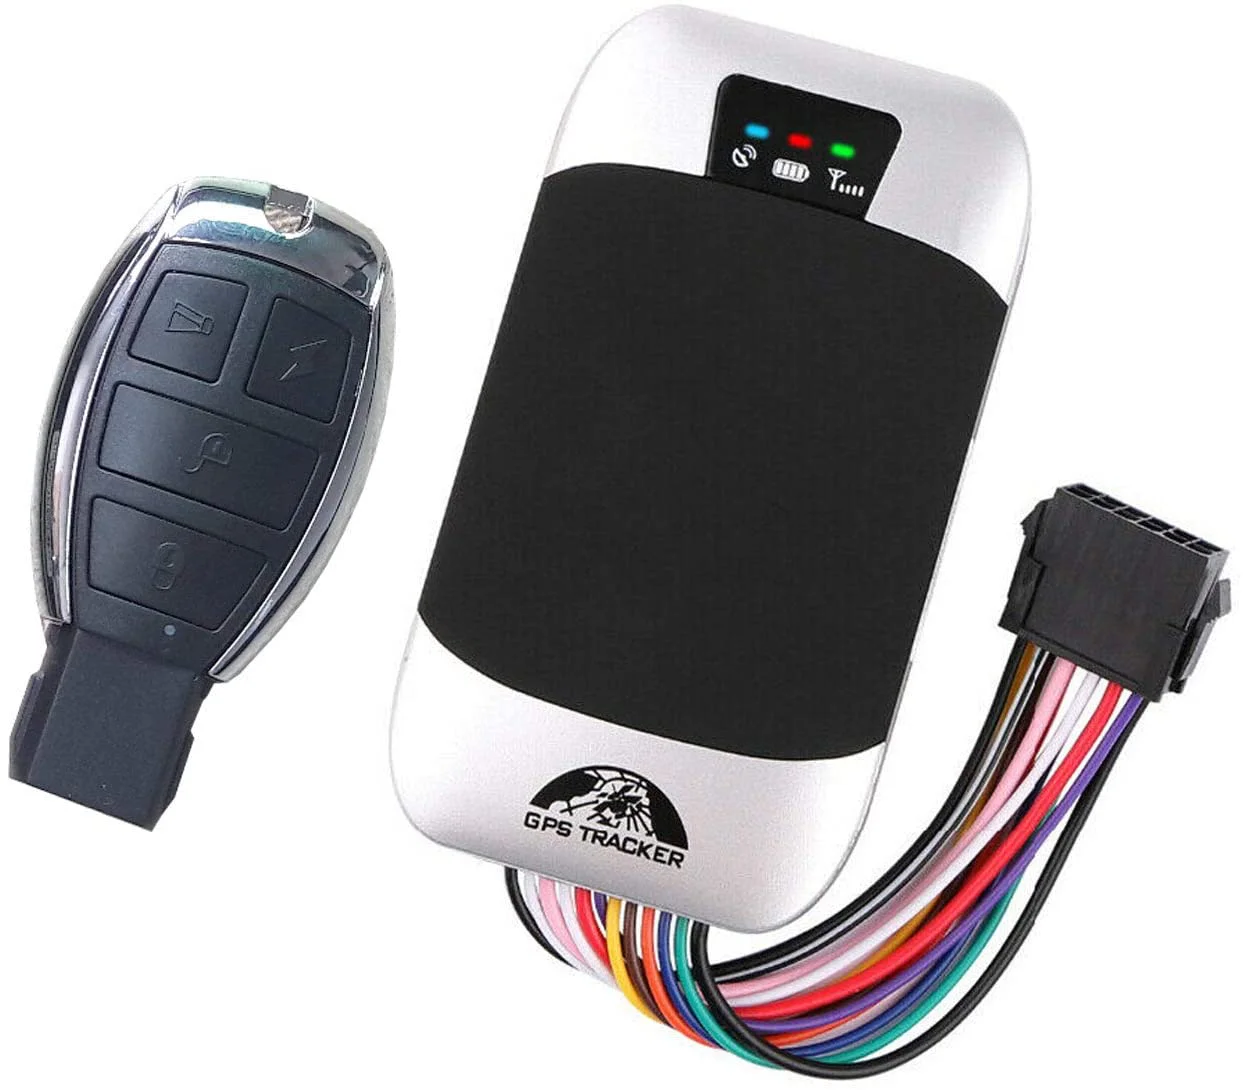 Tk303g — gps de détection de moteur de voiture, 3G, 303g, scanner, véhicule, motocyclette